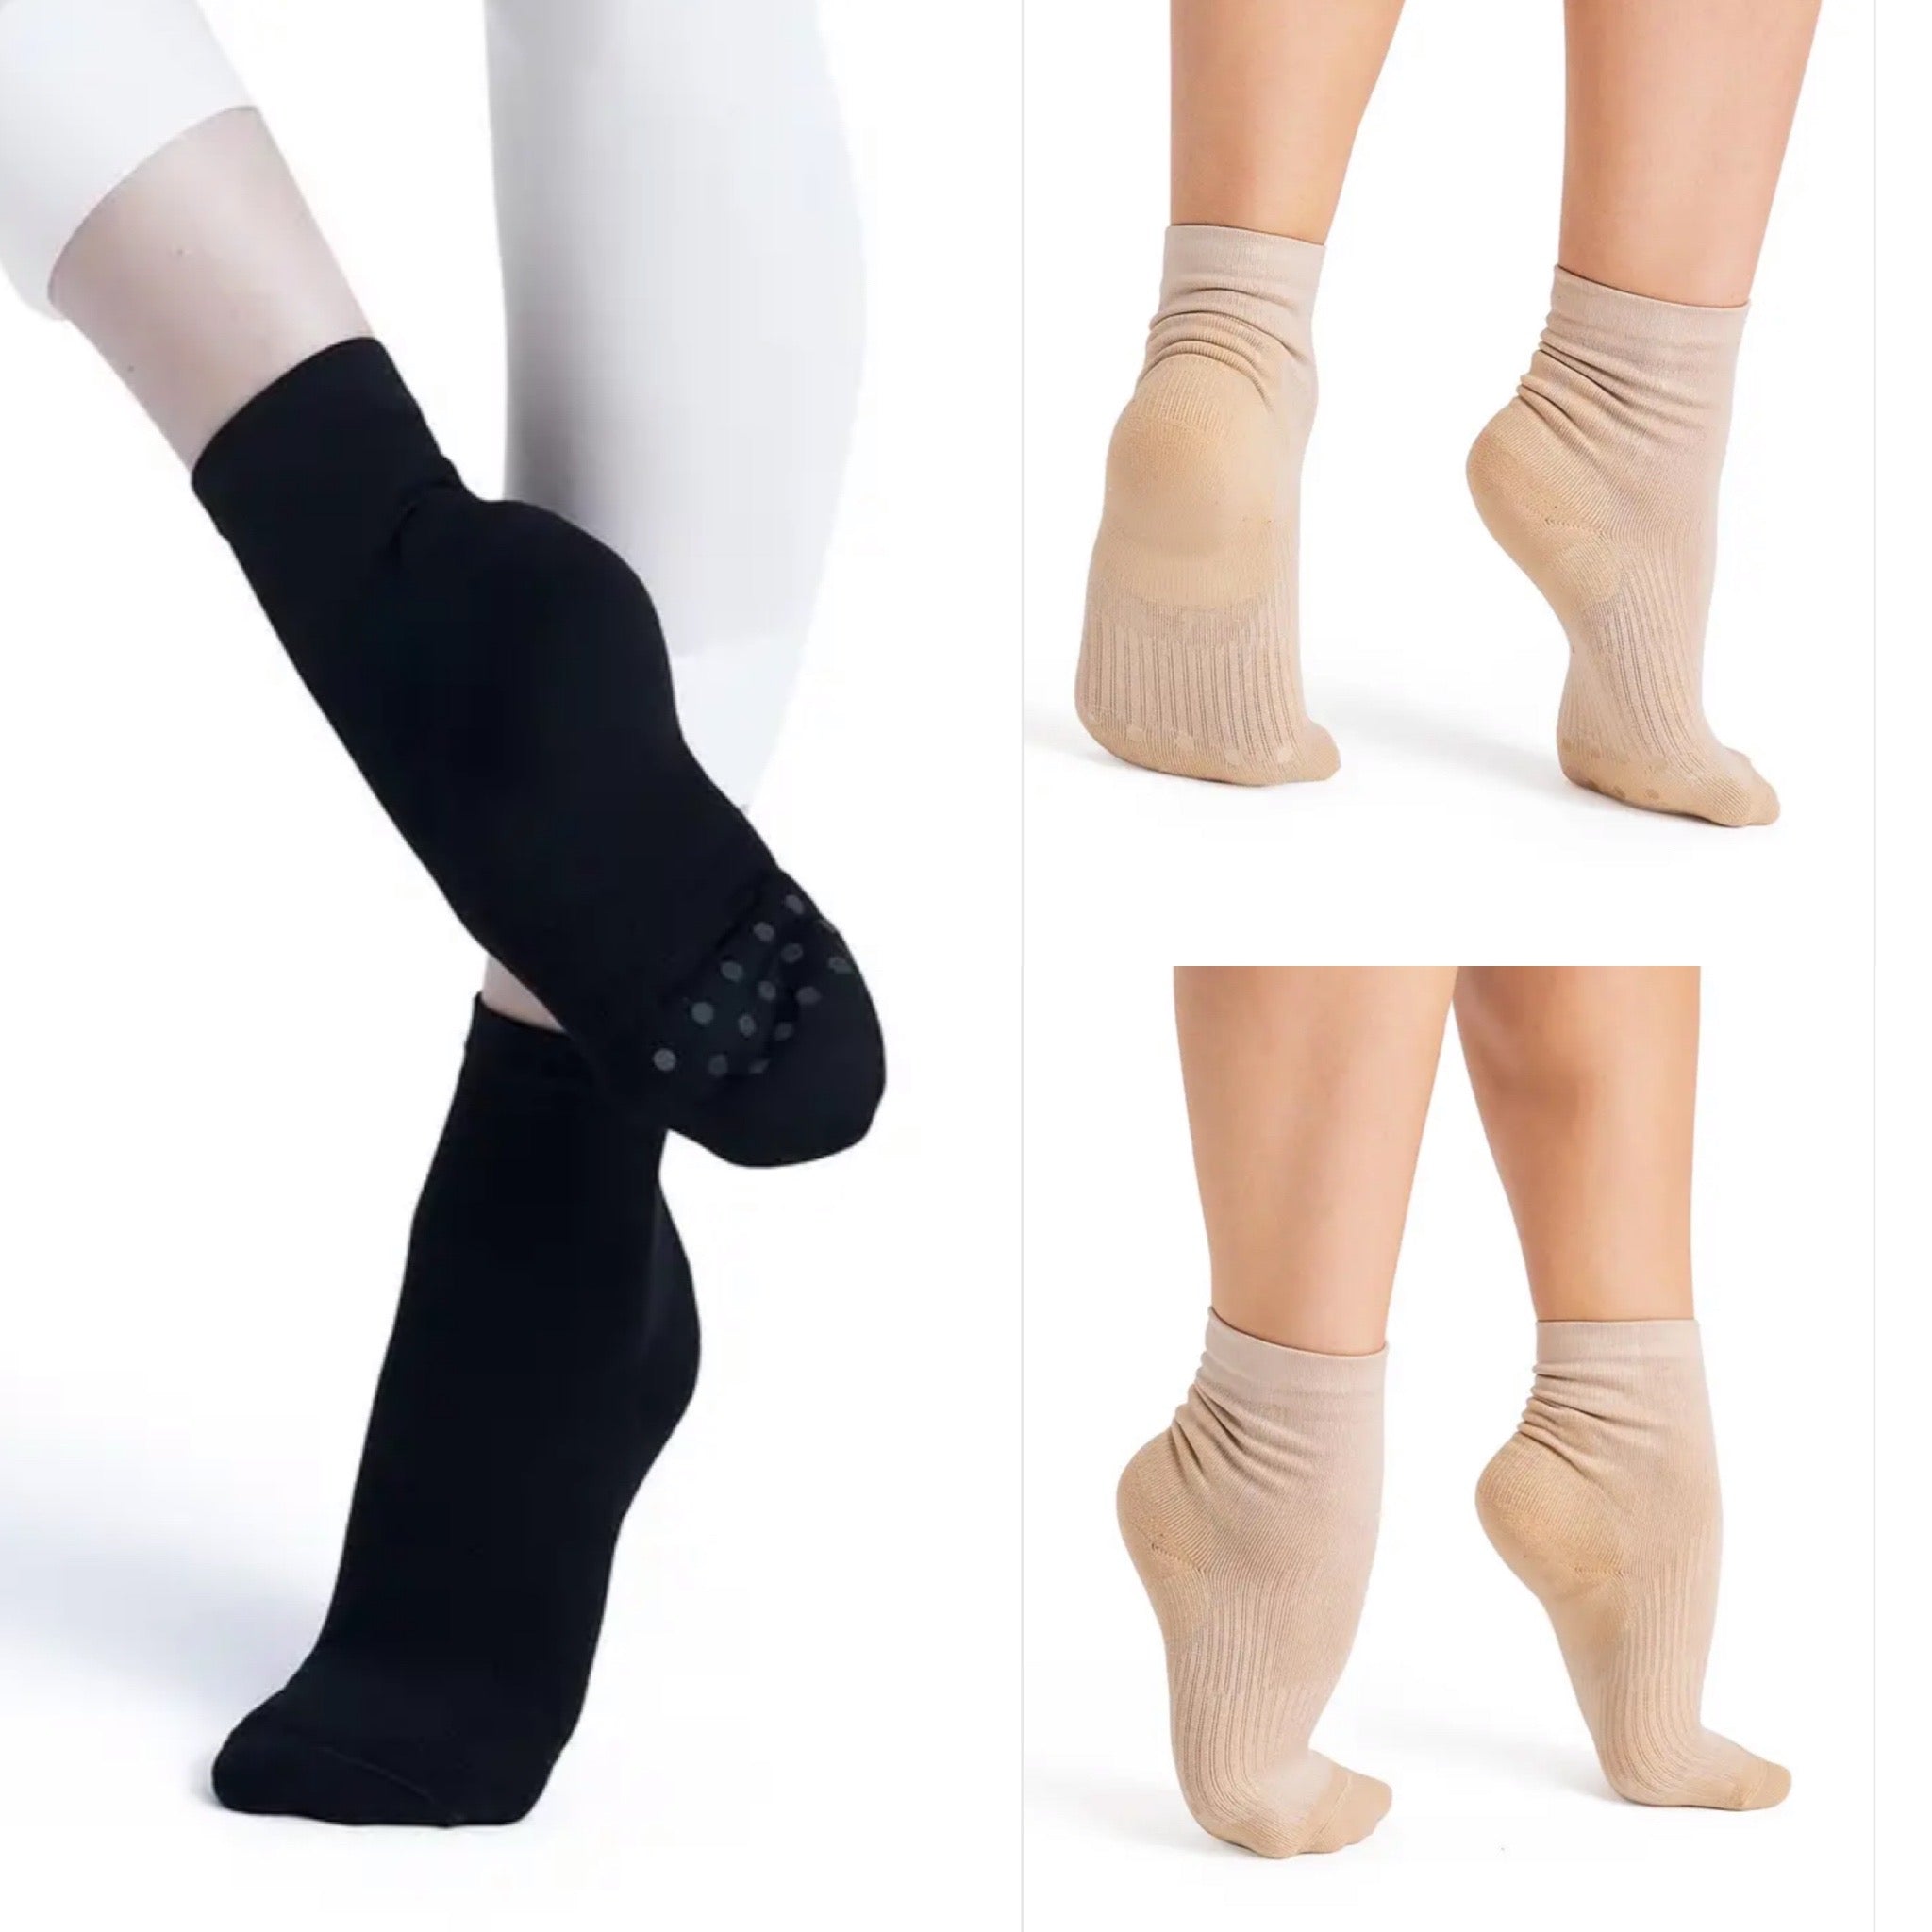 Capezio Lifeknit Socks, Capezio Socks